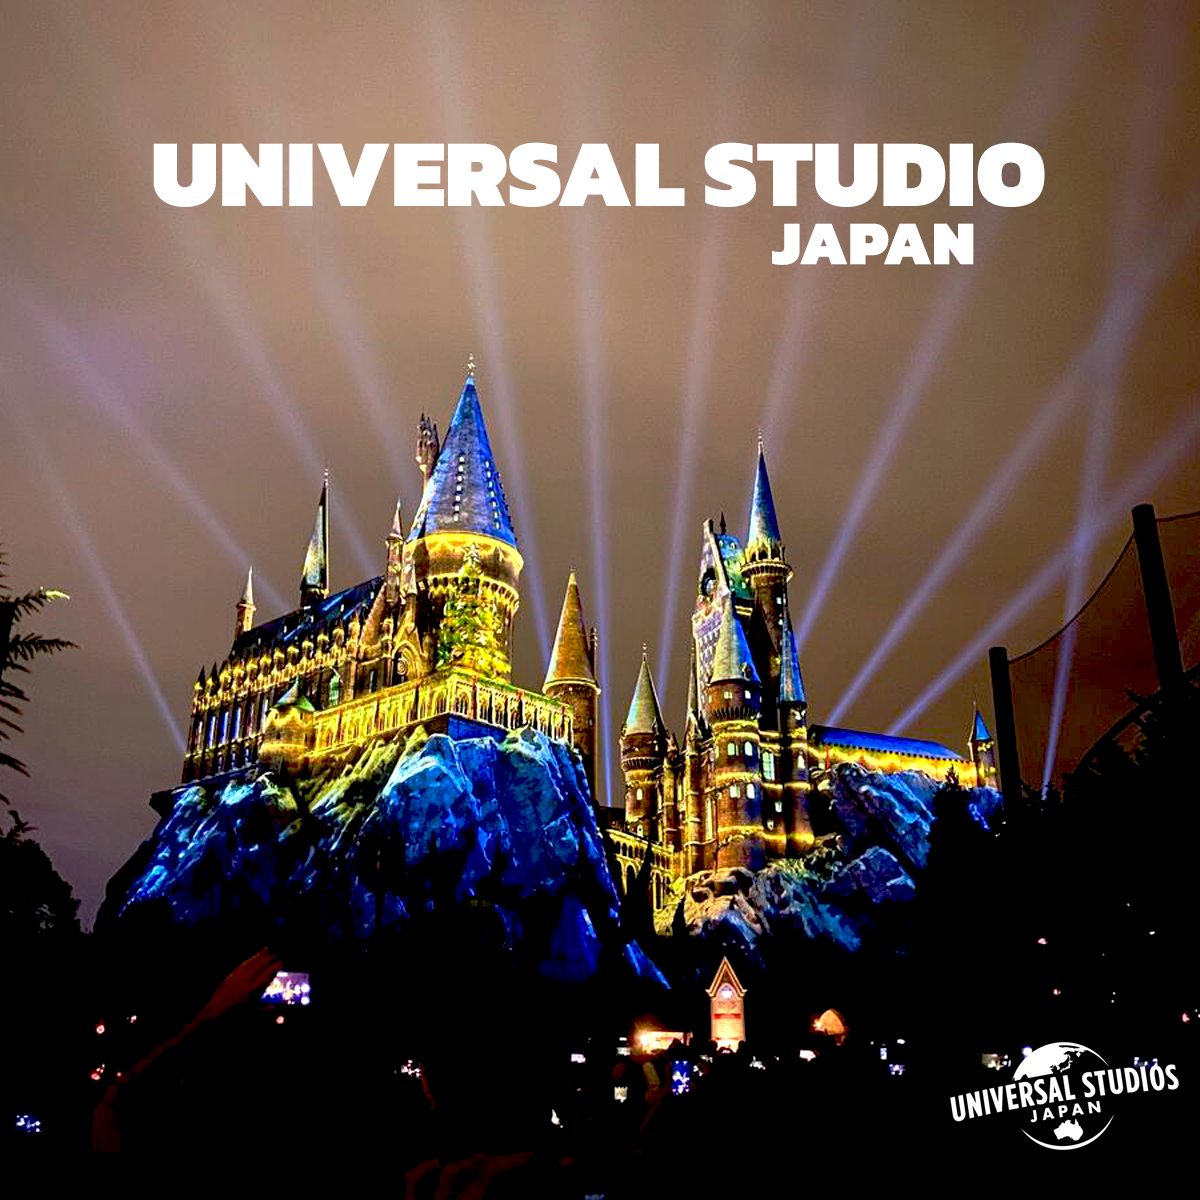 Universal studios Japan